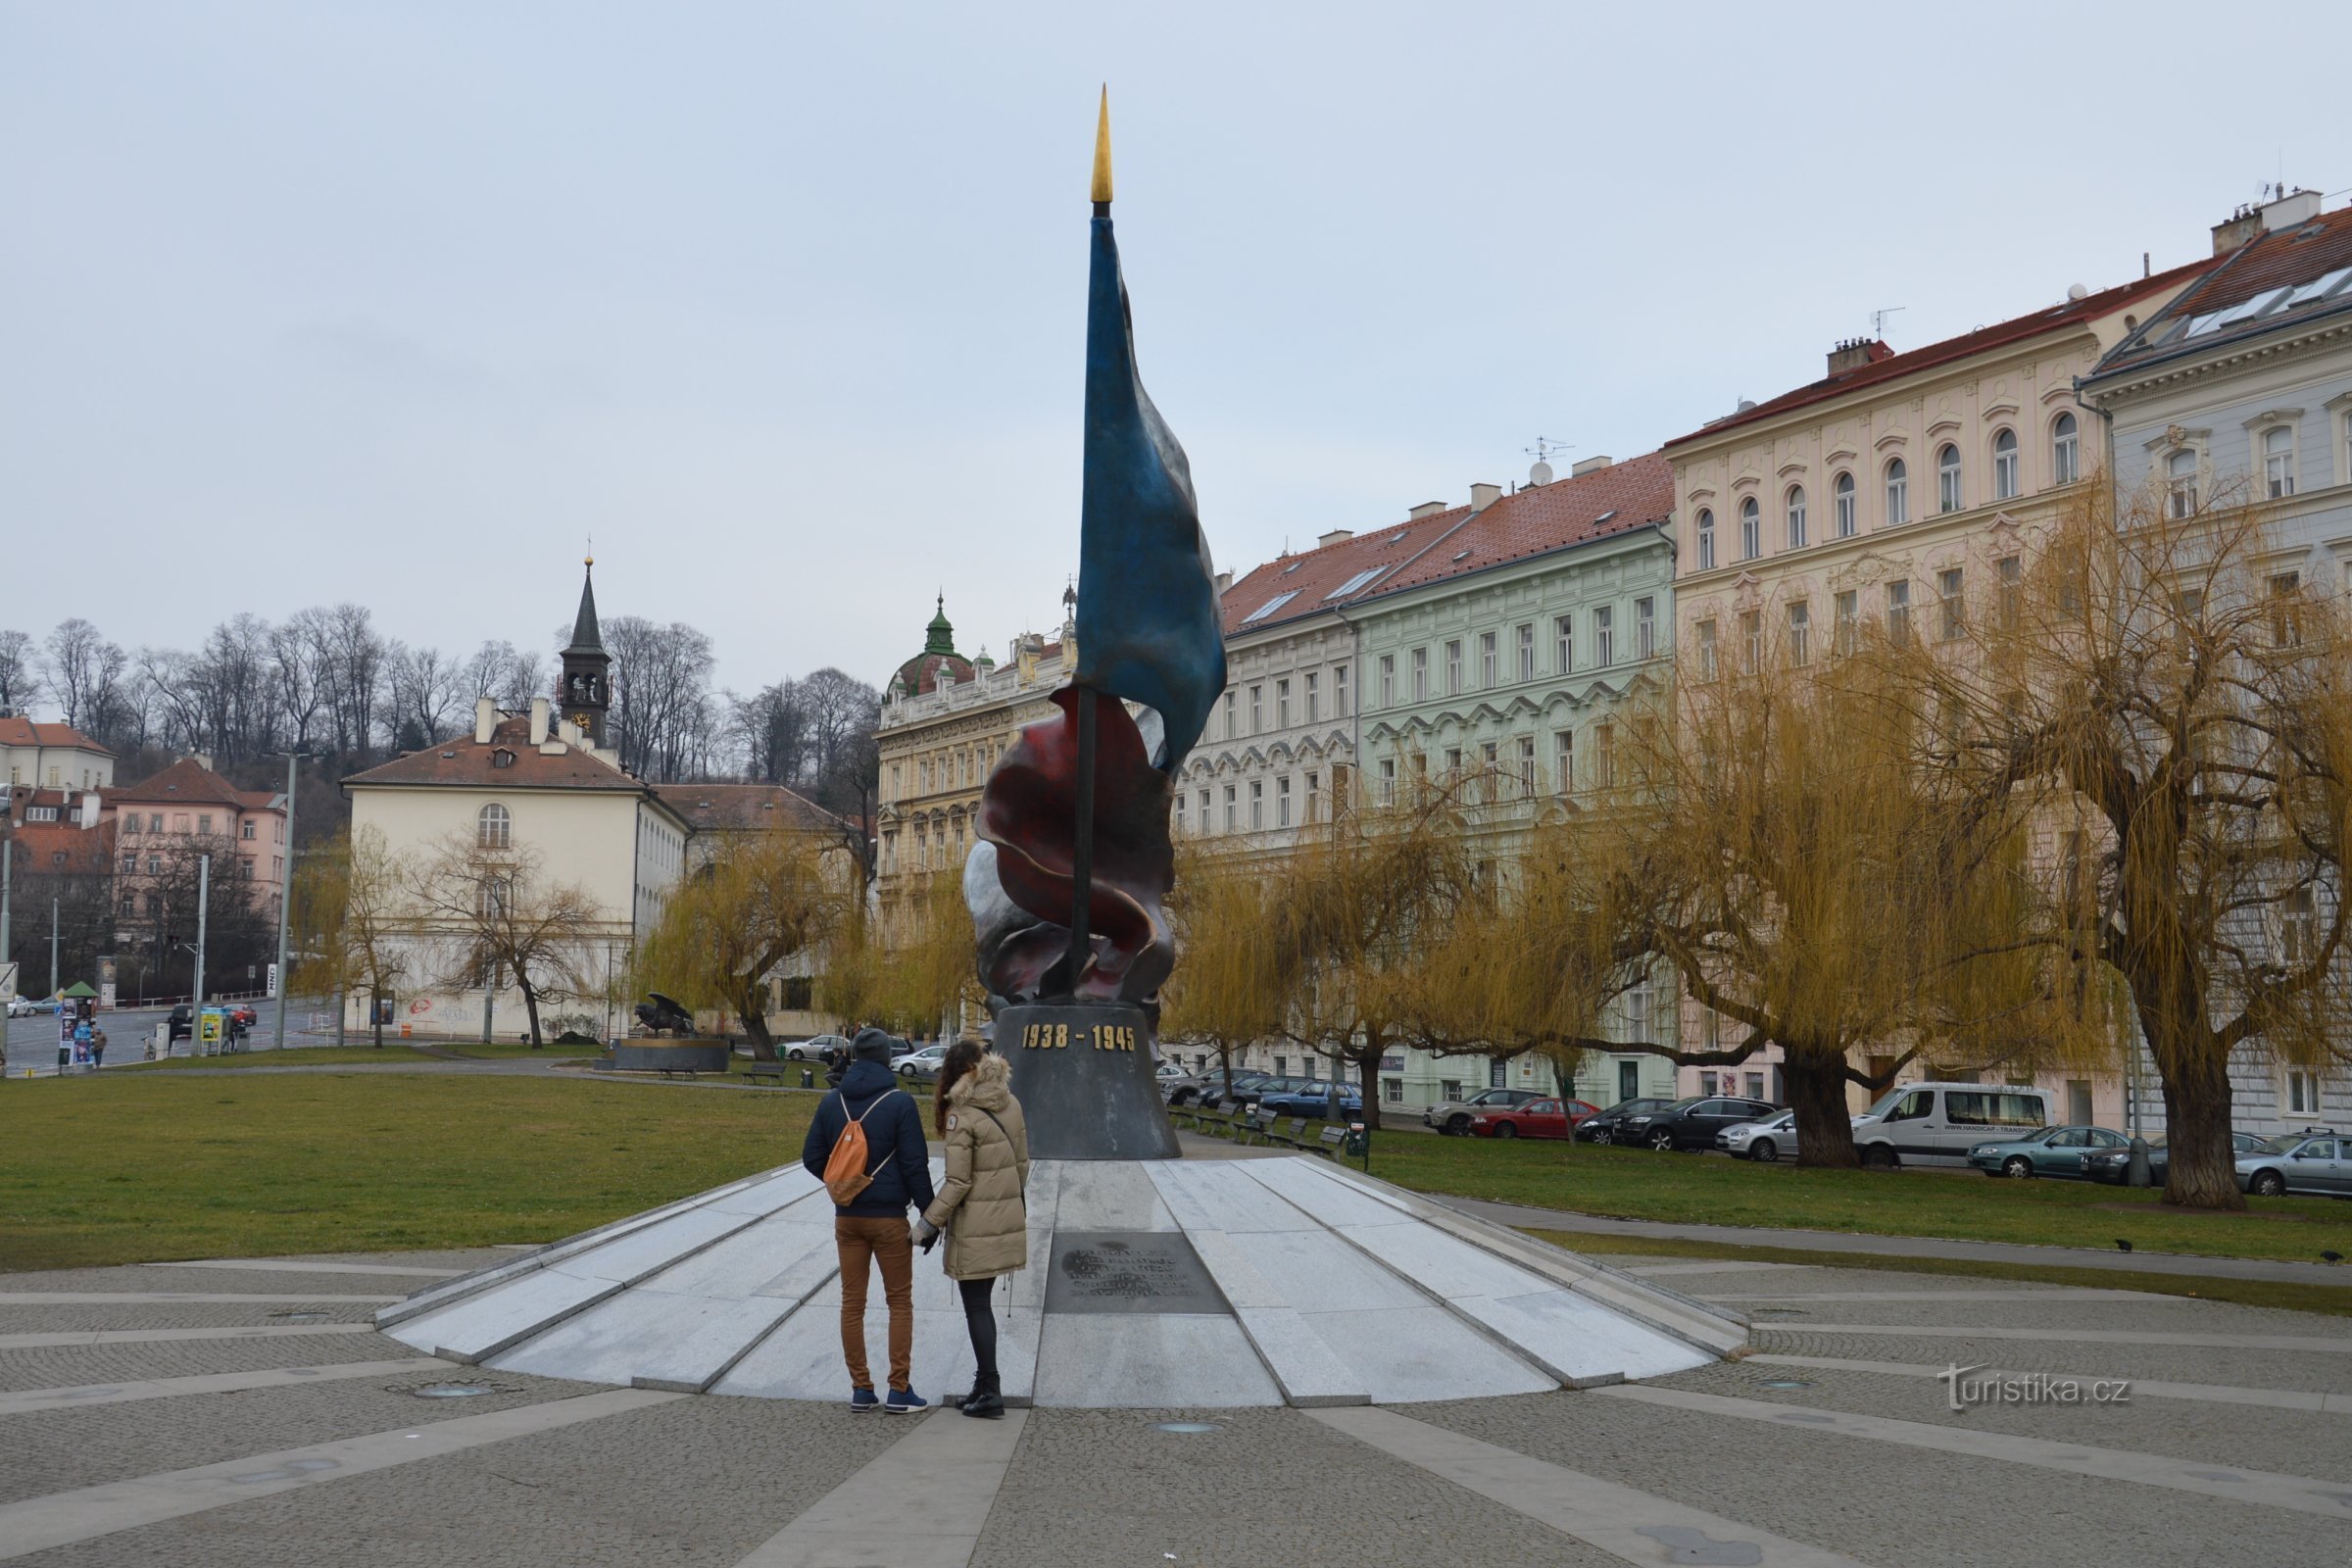 Klárov - monumento à 2ª resistência, Instituto Klár ao fundo à esquerda